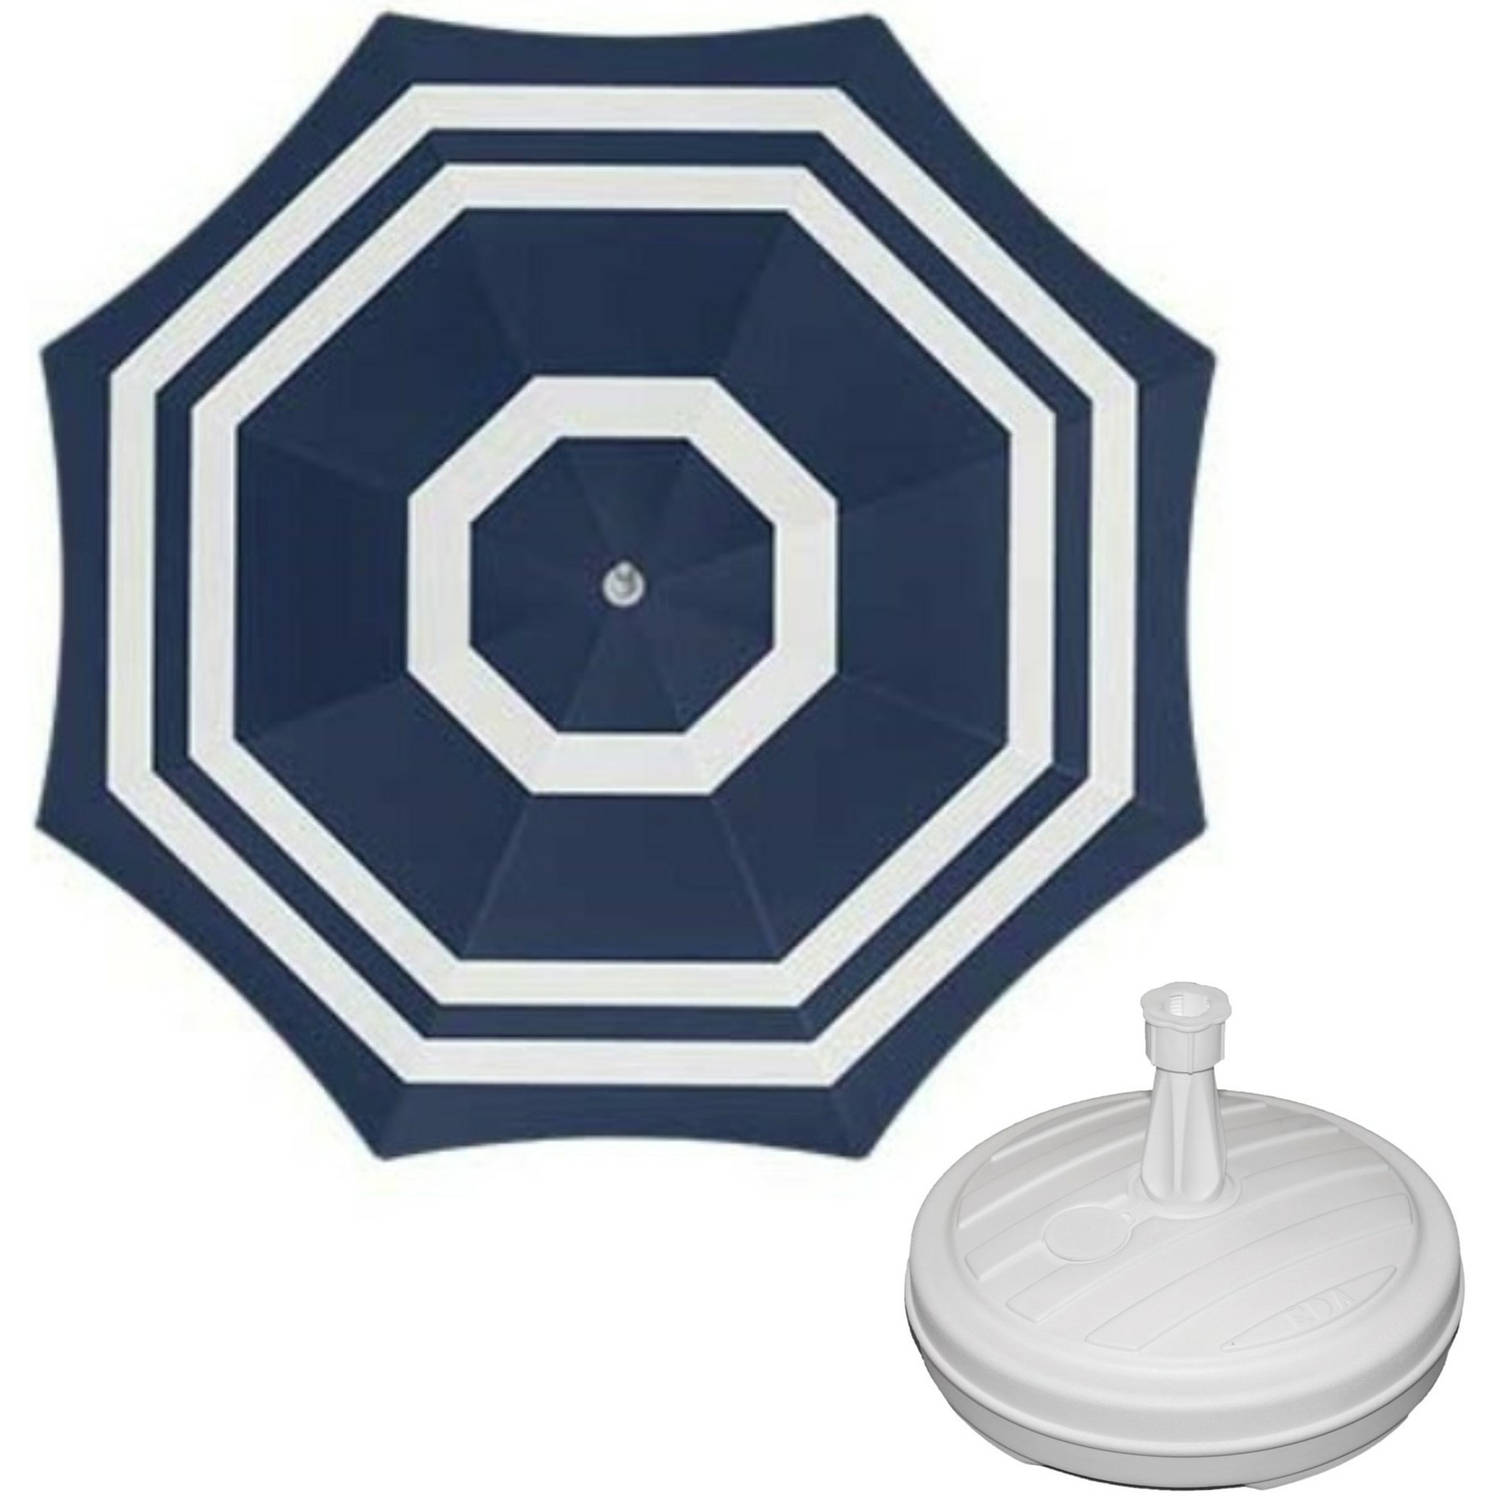 Parasol Blauw-wit D120 cm incl. draagtas parasolvoet 42 cm Parasols